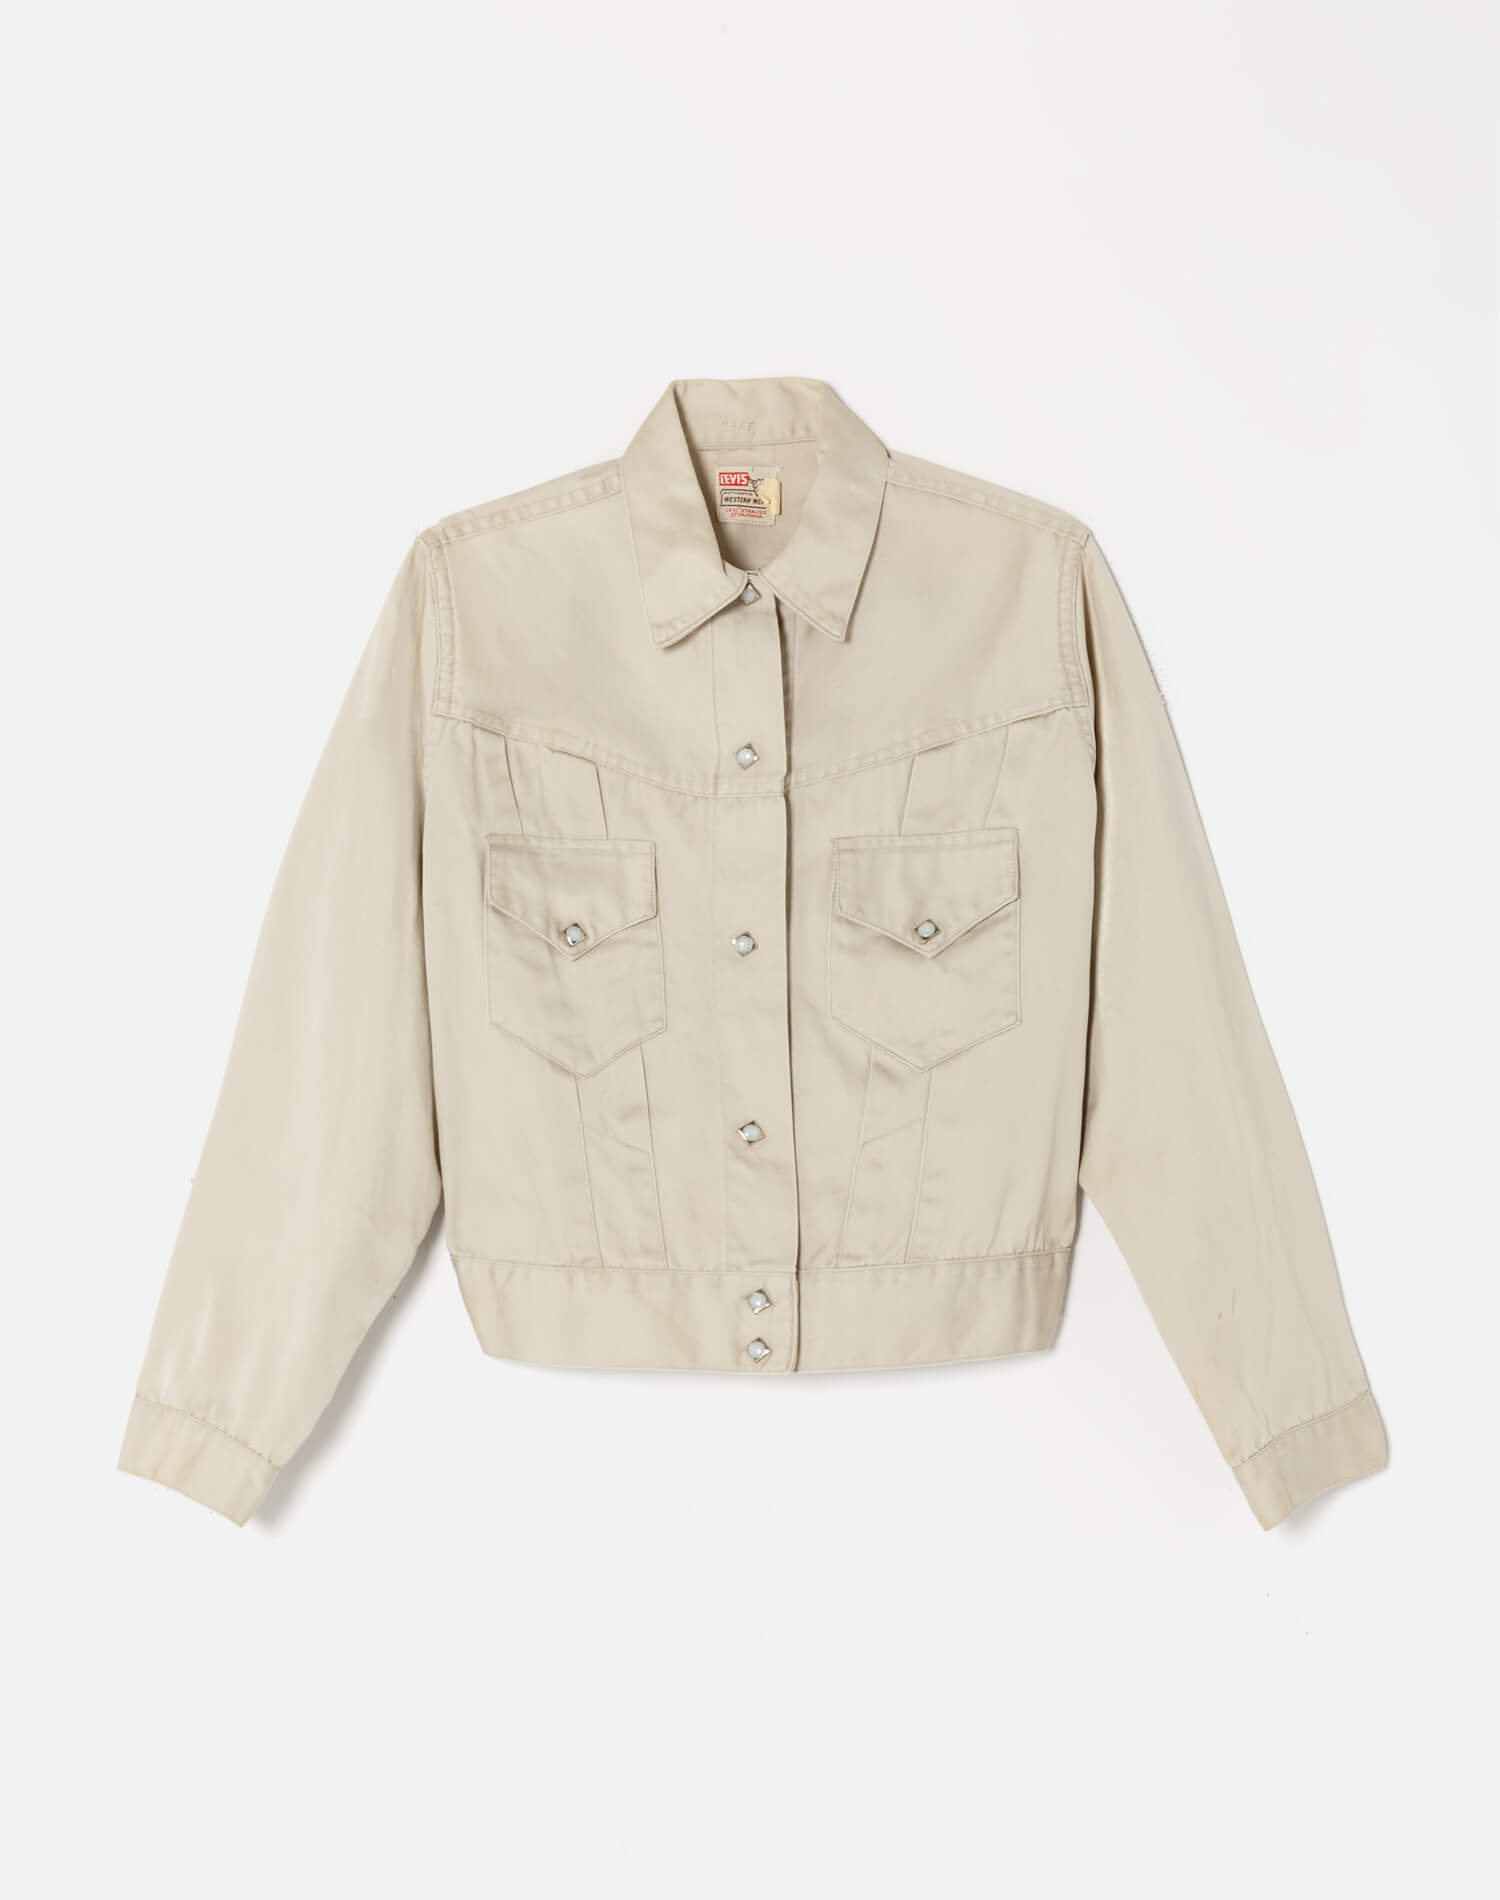 50s Levi's Western Wear Jacket